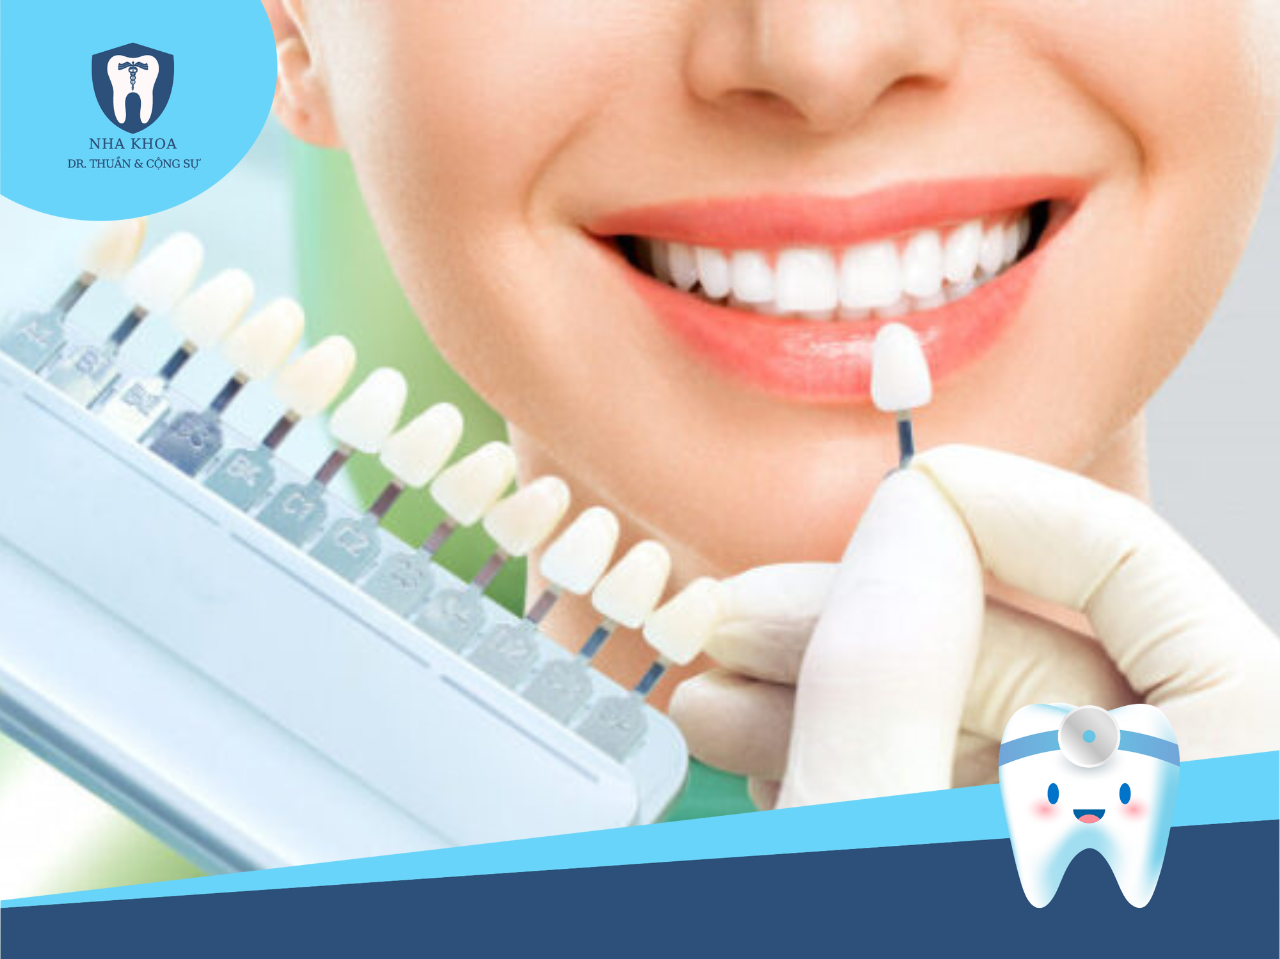 Bọc răng sứ thẩm mỹ là phương pháp hàng đầu giúp cải thiện nụ cười và tạo ra vẻ đẹp tự nhiên và hoàn hảo cho răng